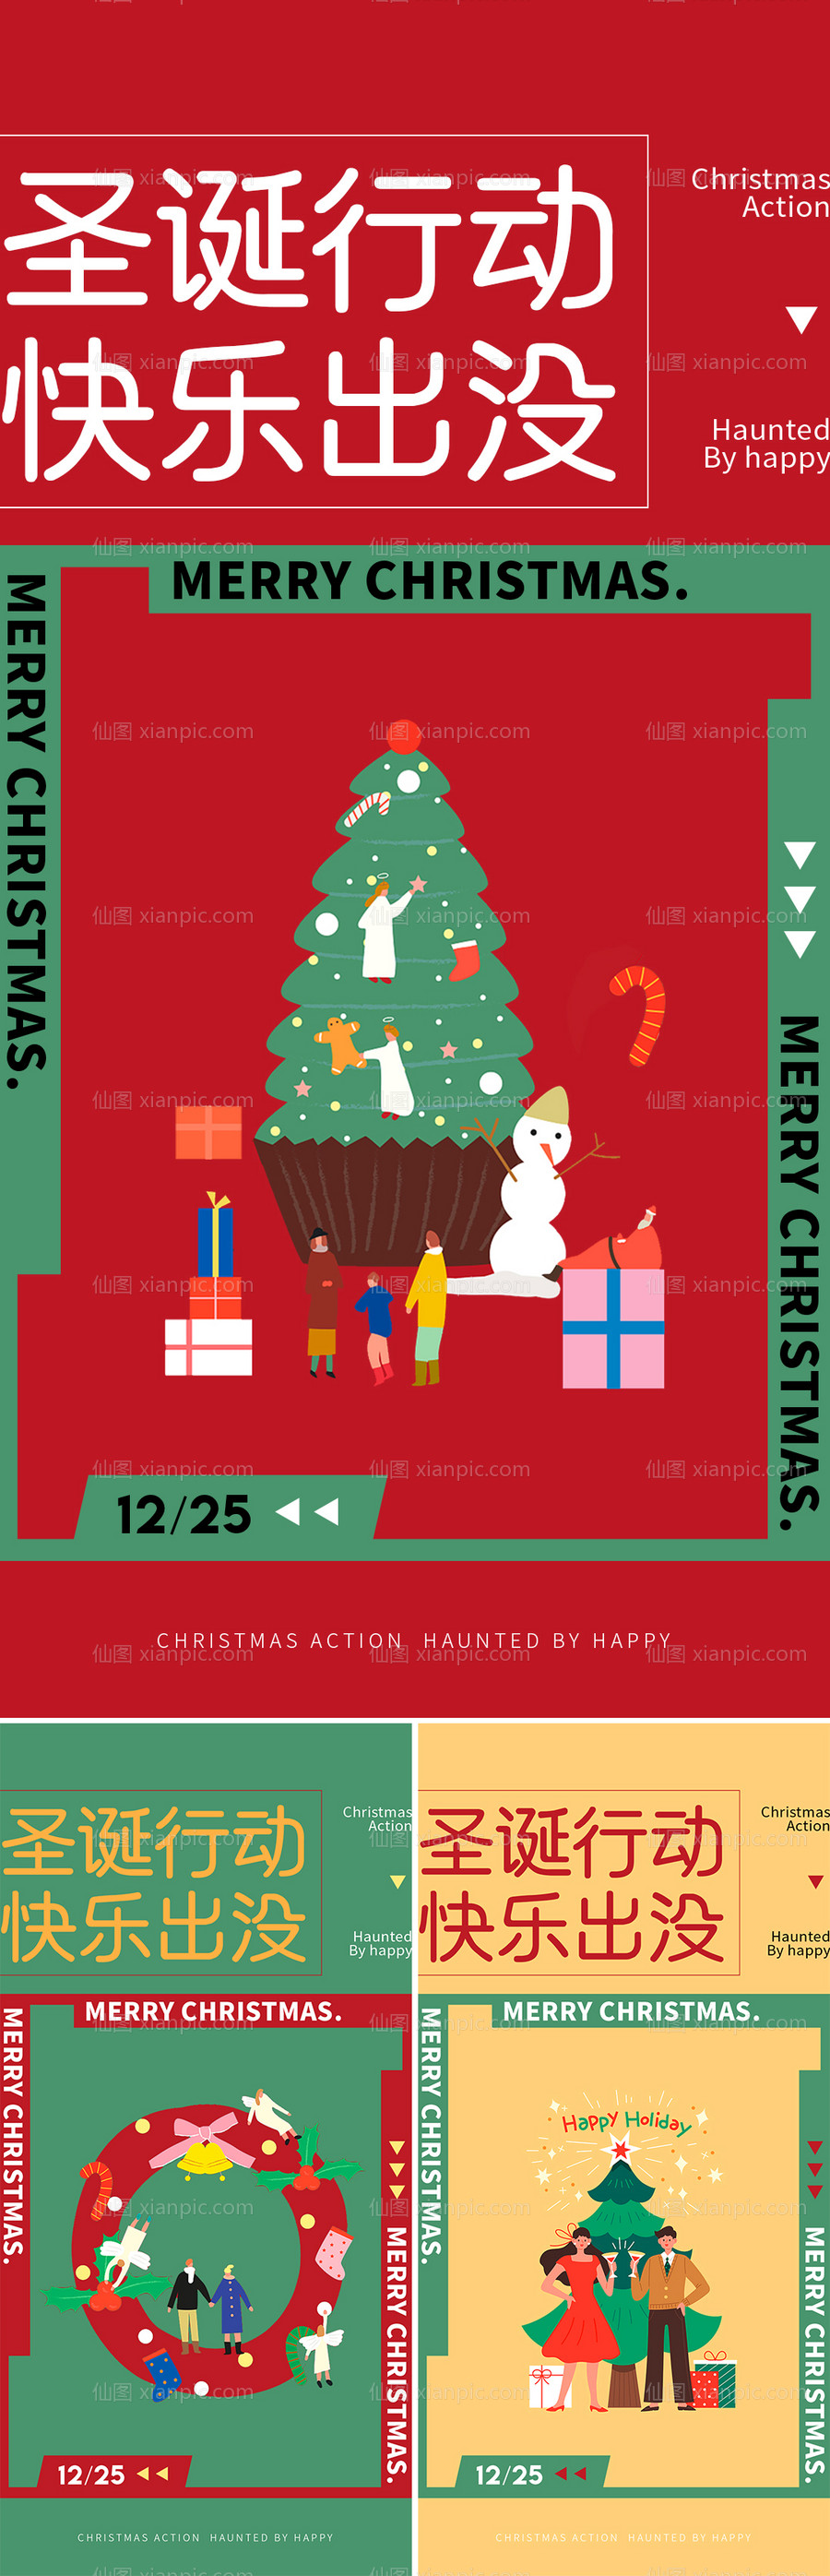 素材乐-圣诞节系列刷屏海报